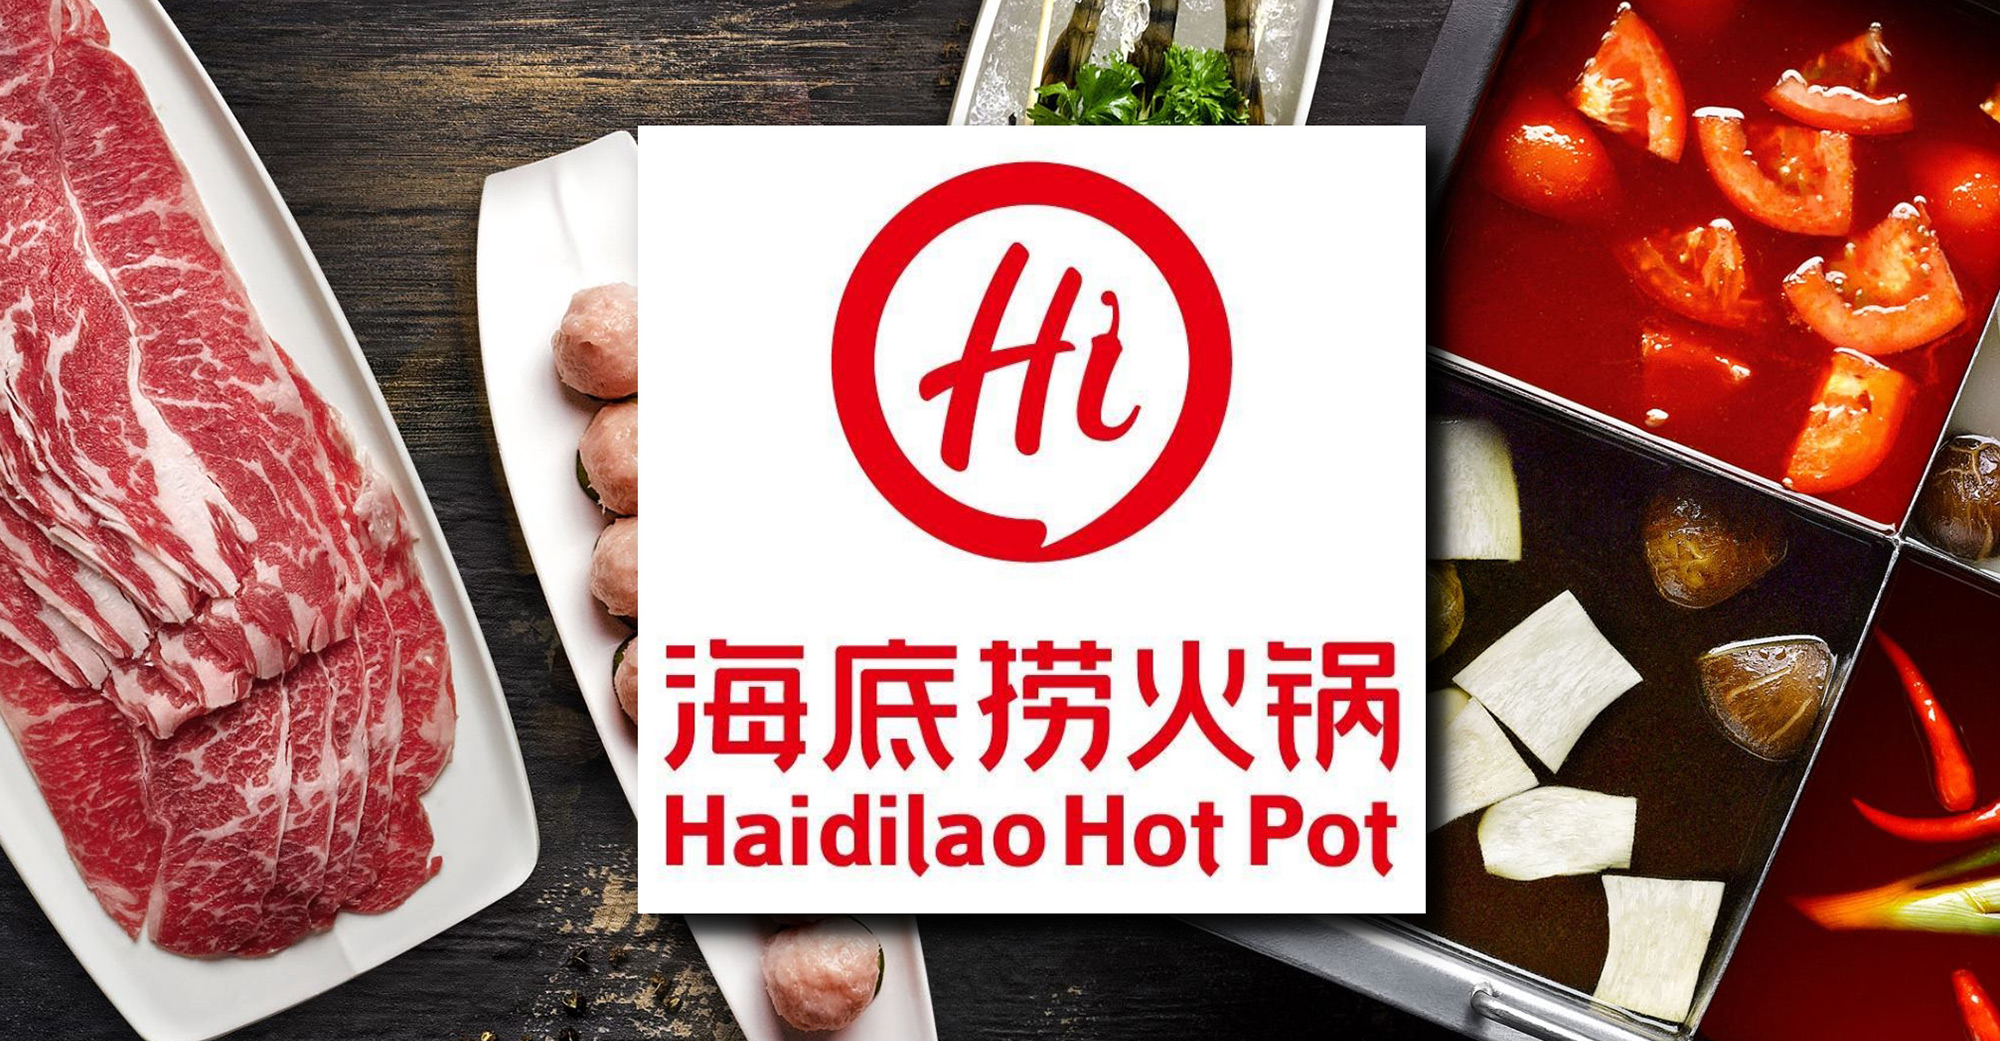 Why Do We Wait Three Hours for Hot Pot at Haidilao?